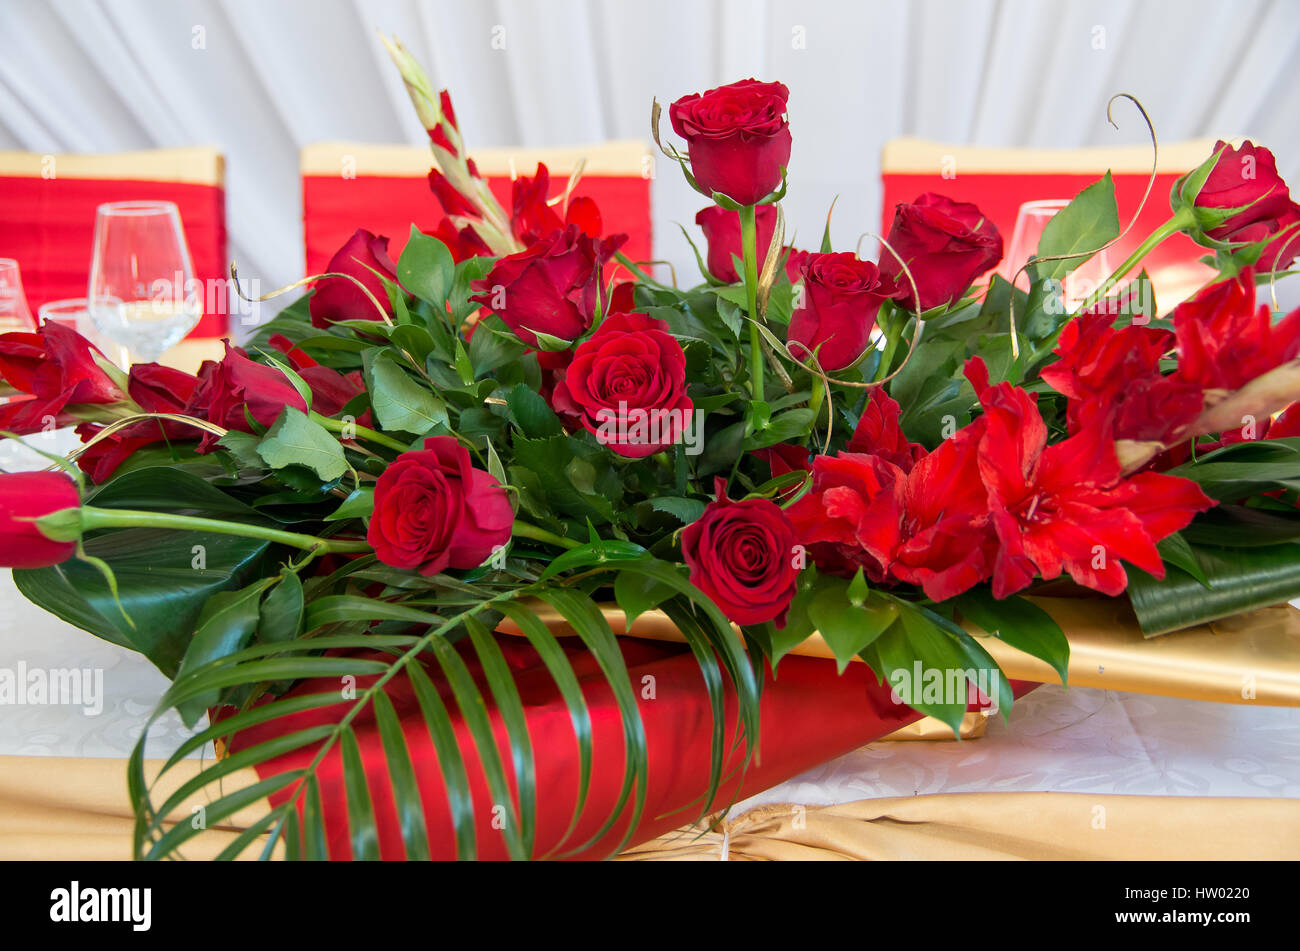 Décoration pour table de fête avec des roses rouges et Lily. Banque D'Images